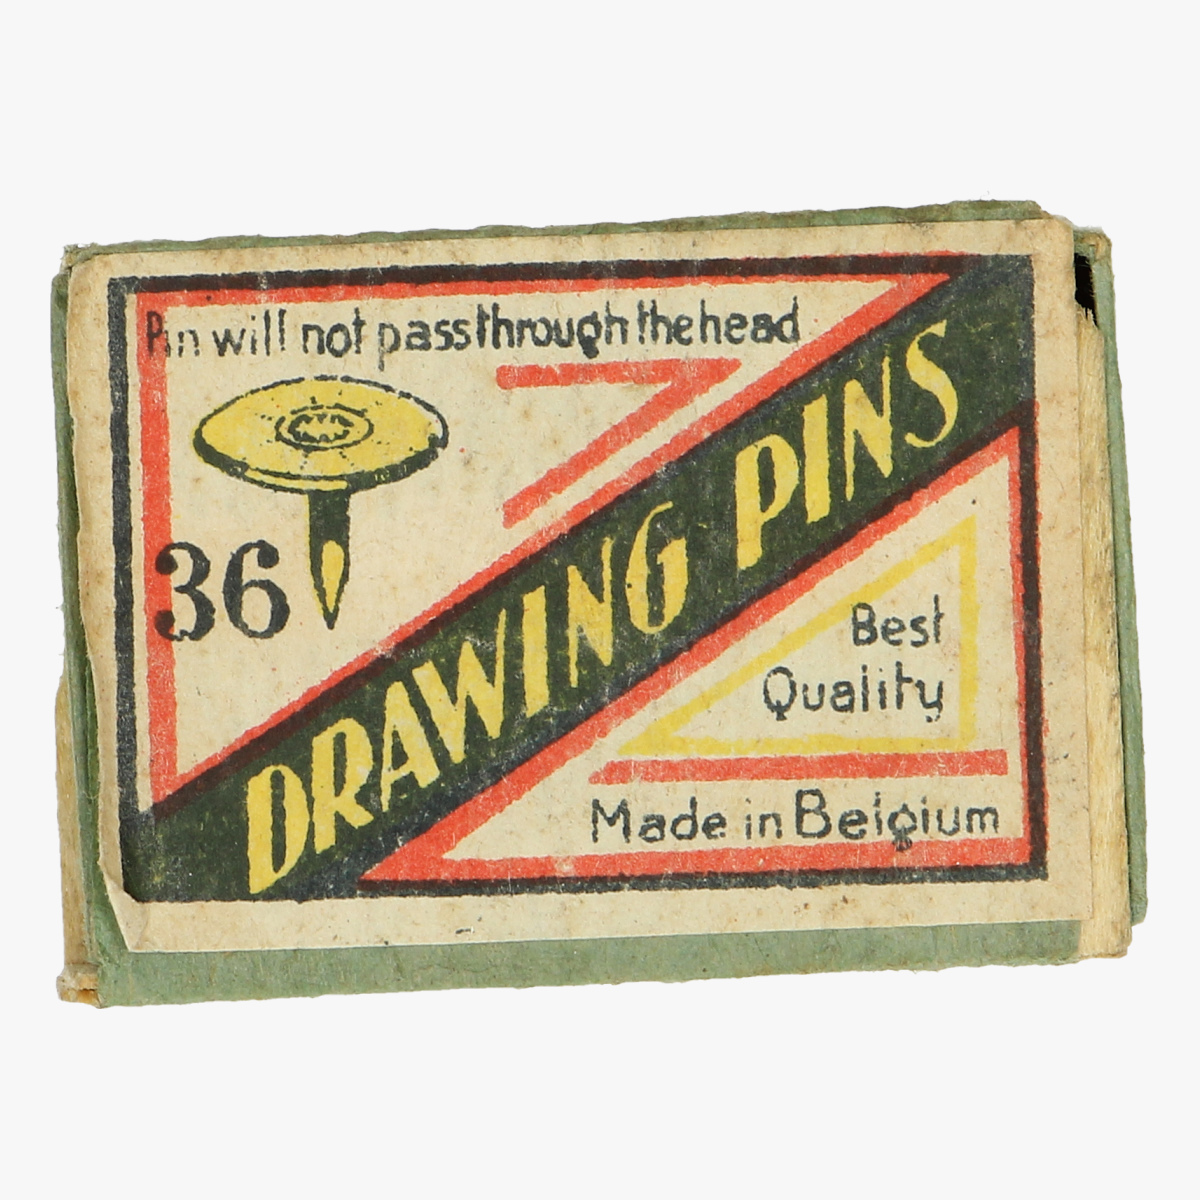 Afbeeldingen van oude doosje drawing pins made in belguim